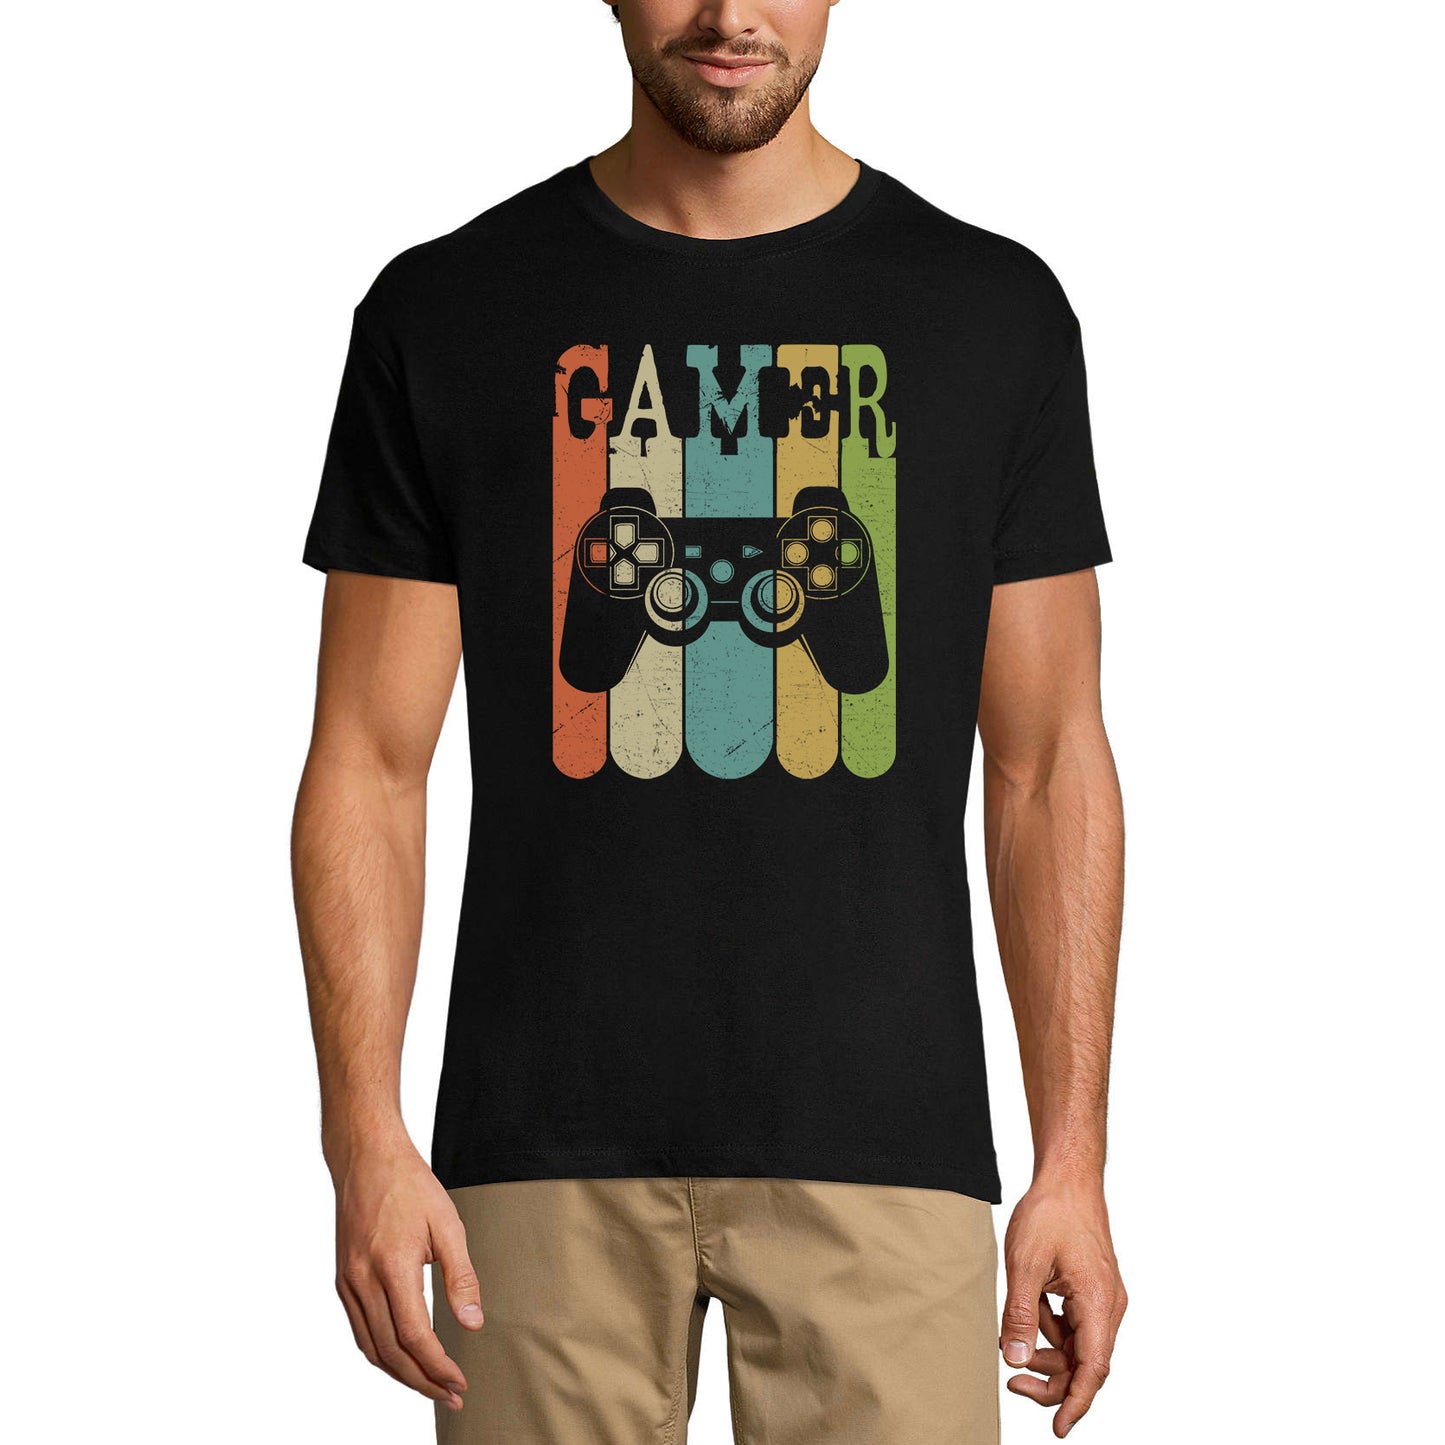 ULTRABASIC Graphic Men's T-Shirt Gamer - Vintage Shirt - Gaming Apparel